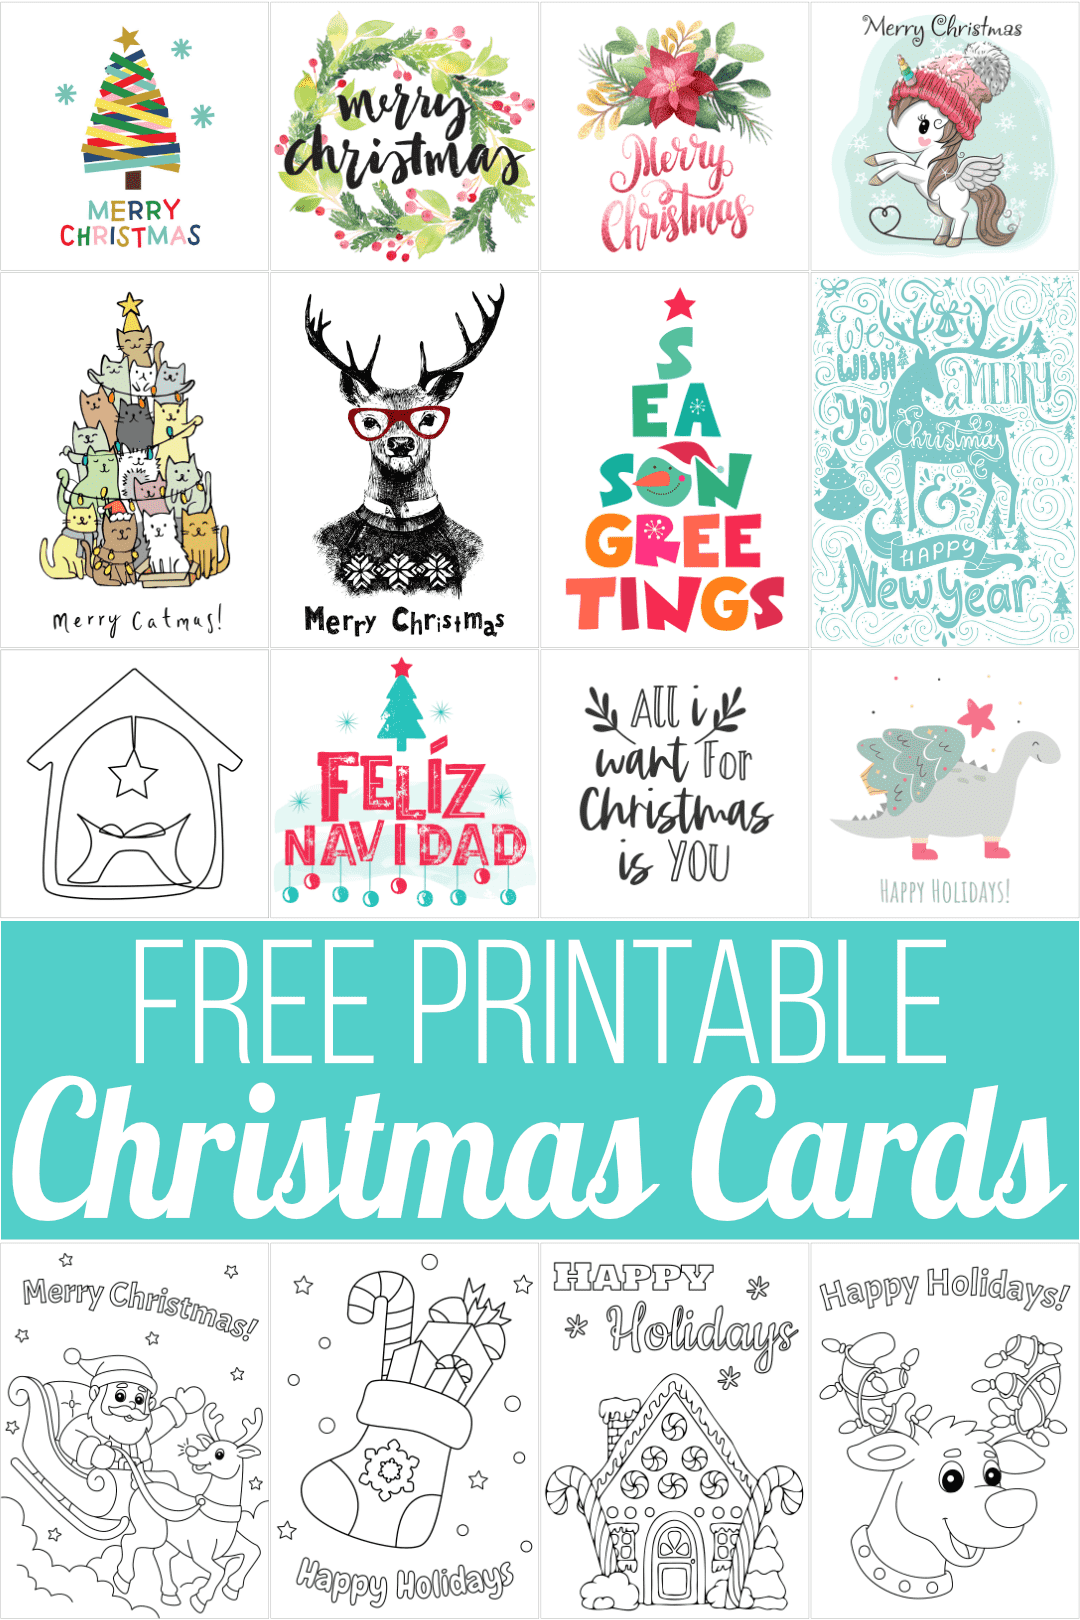 free-printable-photo-cards-christmas-printable-templates